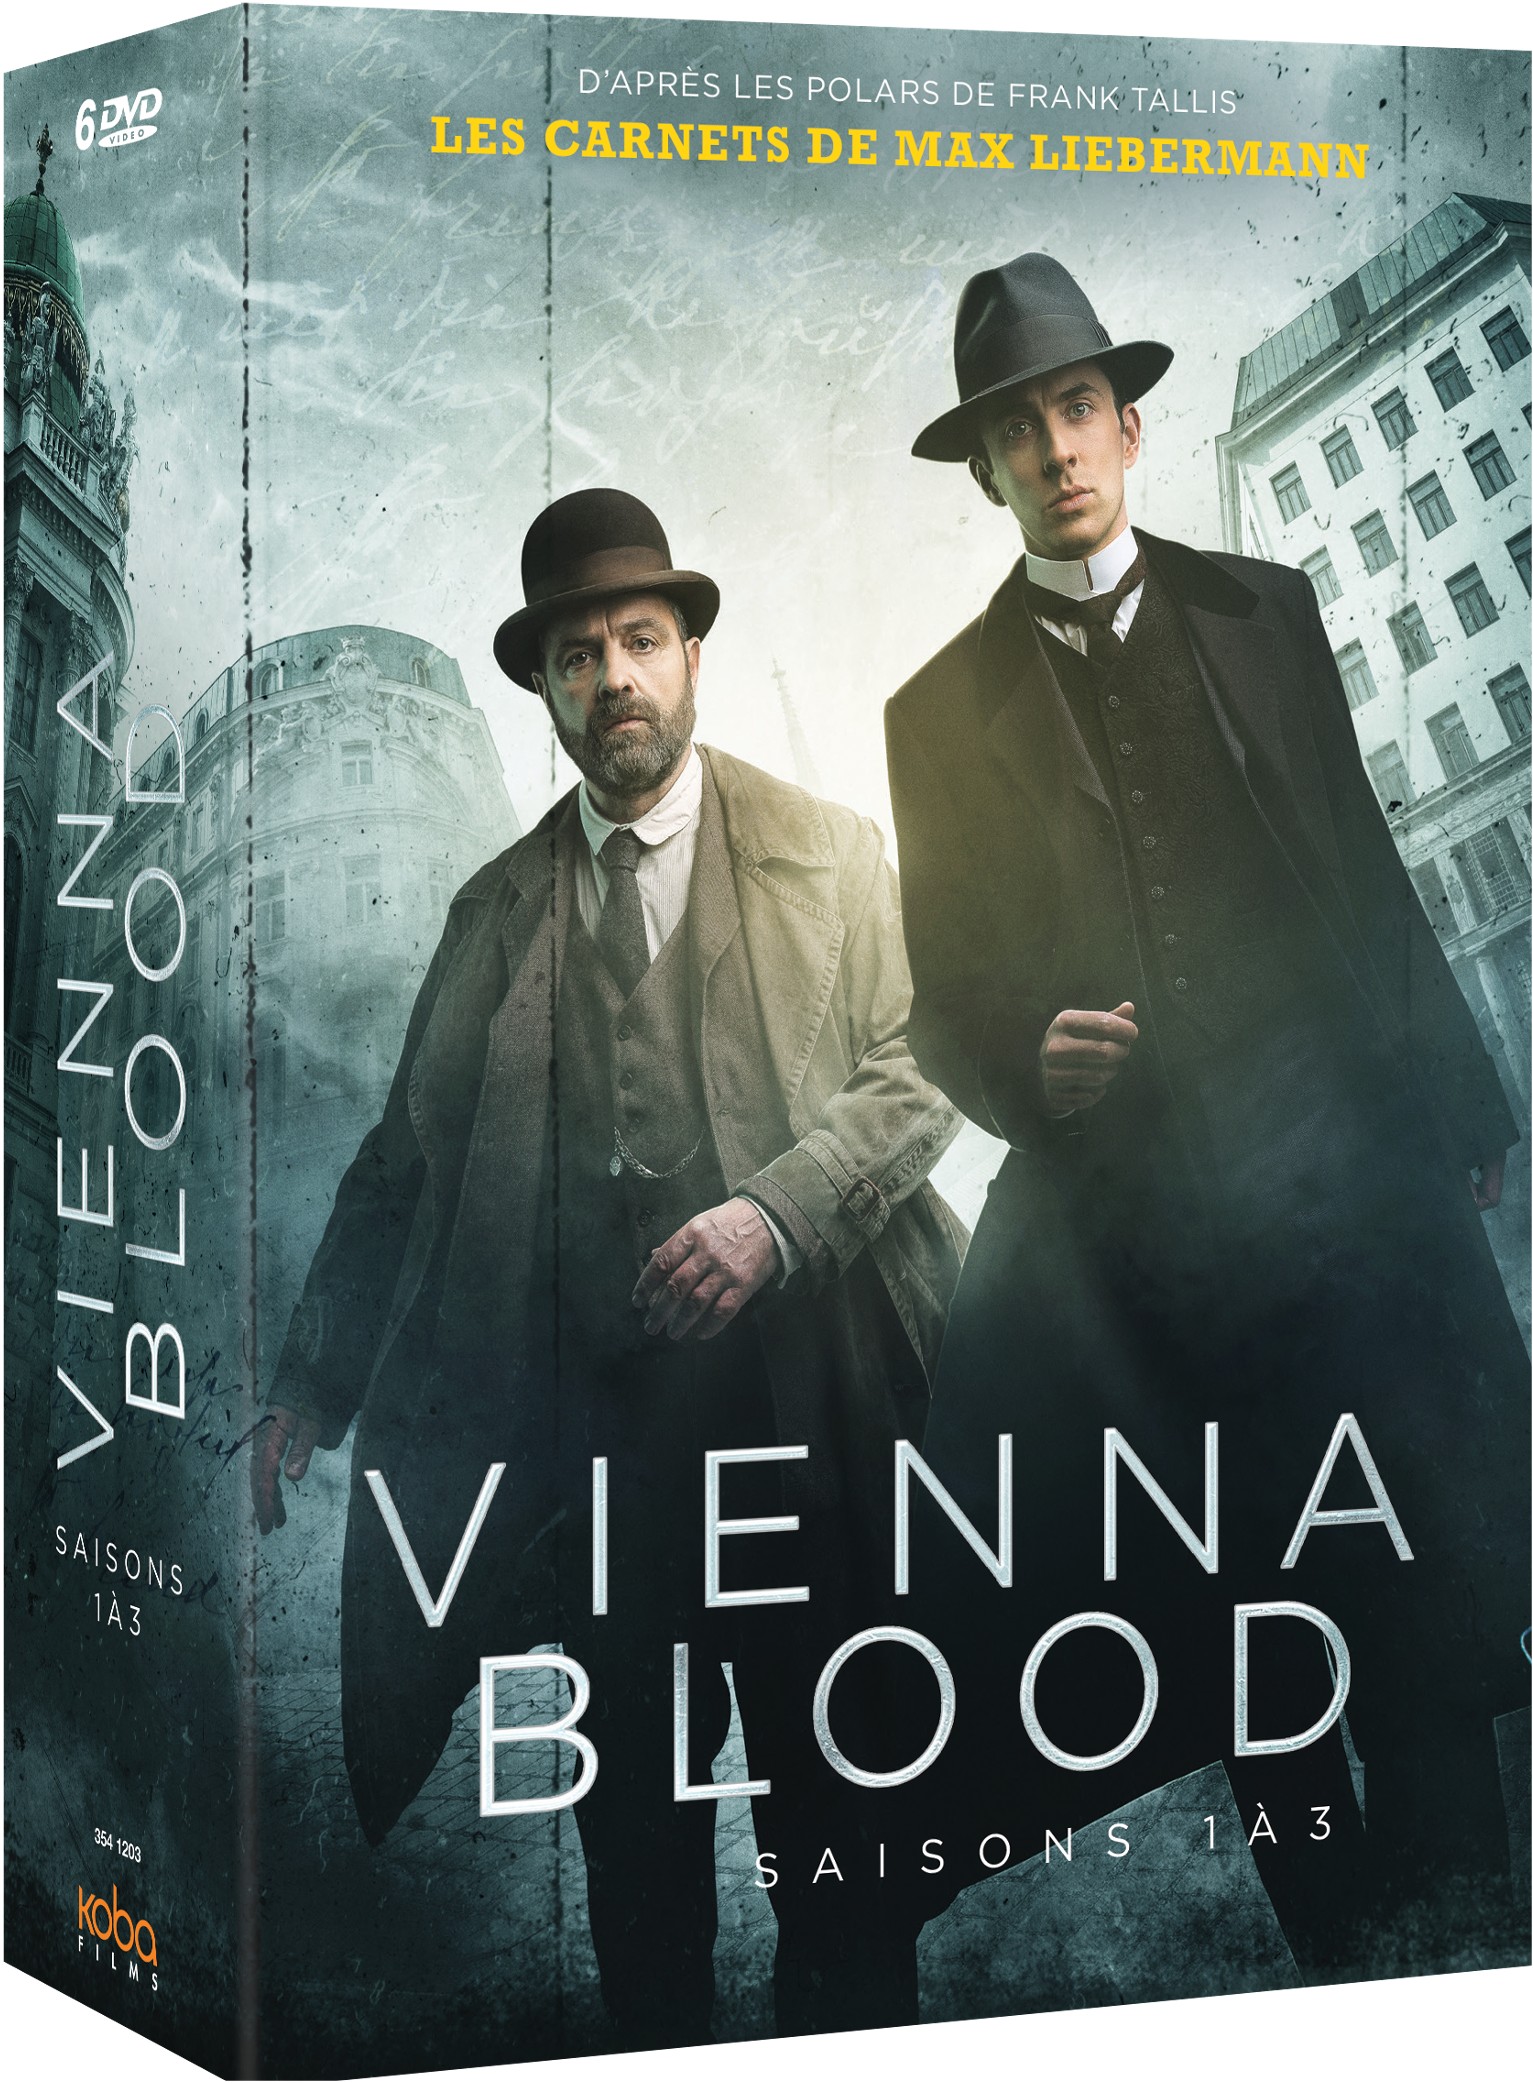 VIENNA BLOOD - SAISONS 1 A 3 - 6 DVD